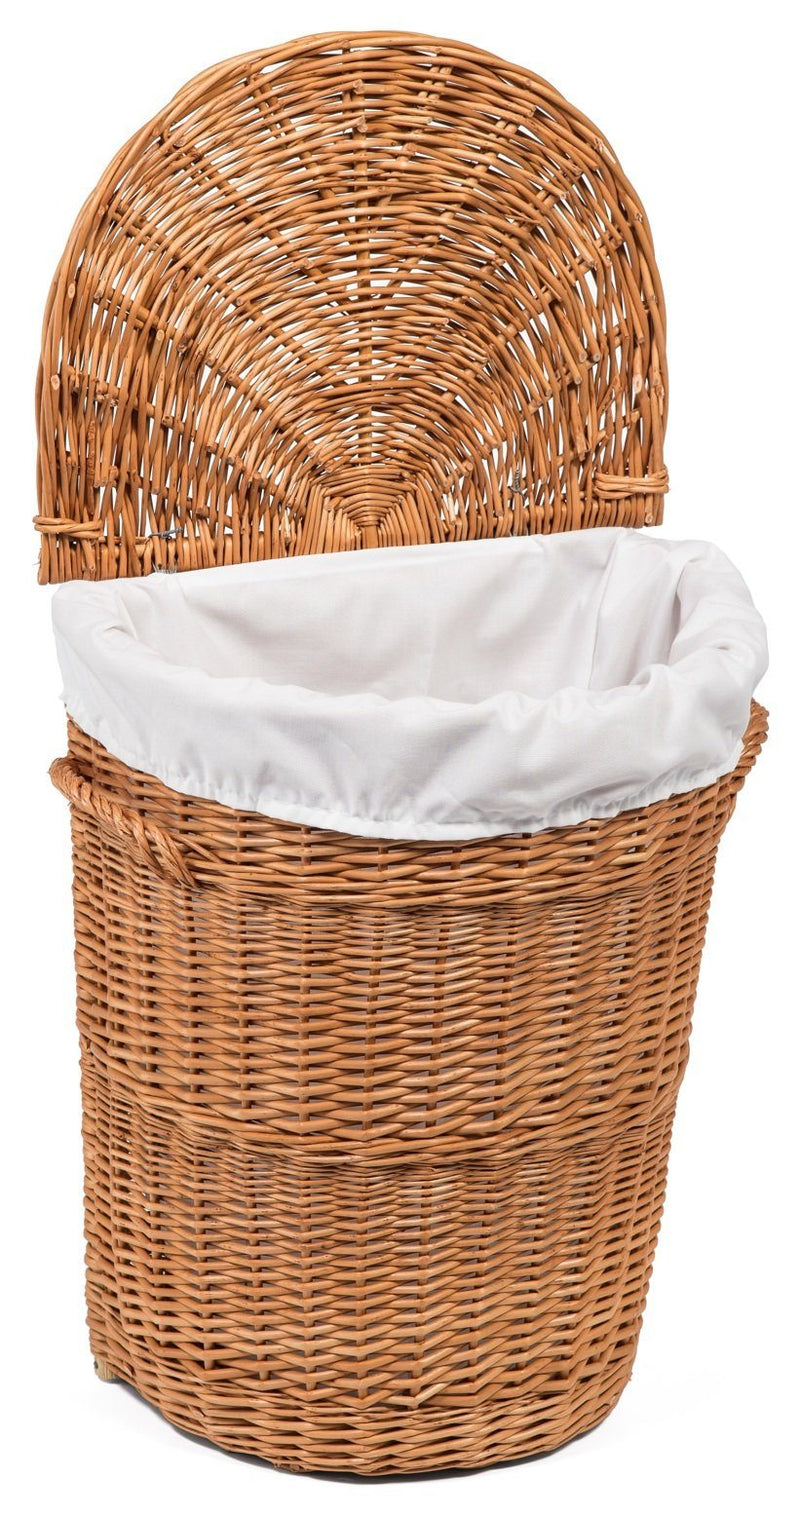 Wicker Lidded Laundry Basket Small Home & Garden Prestige Wicker 